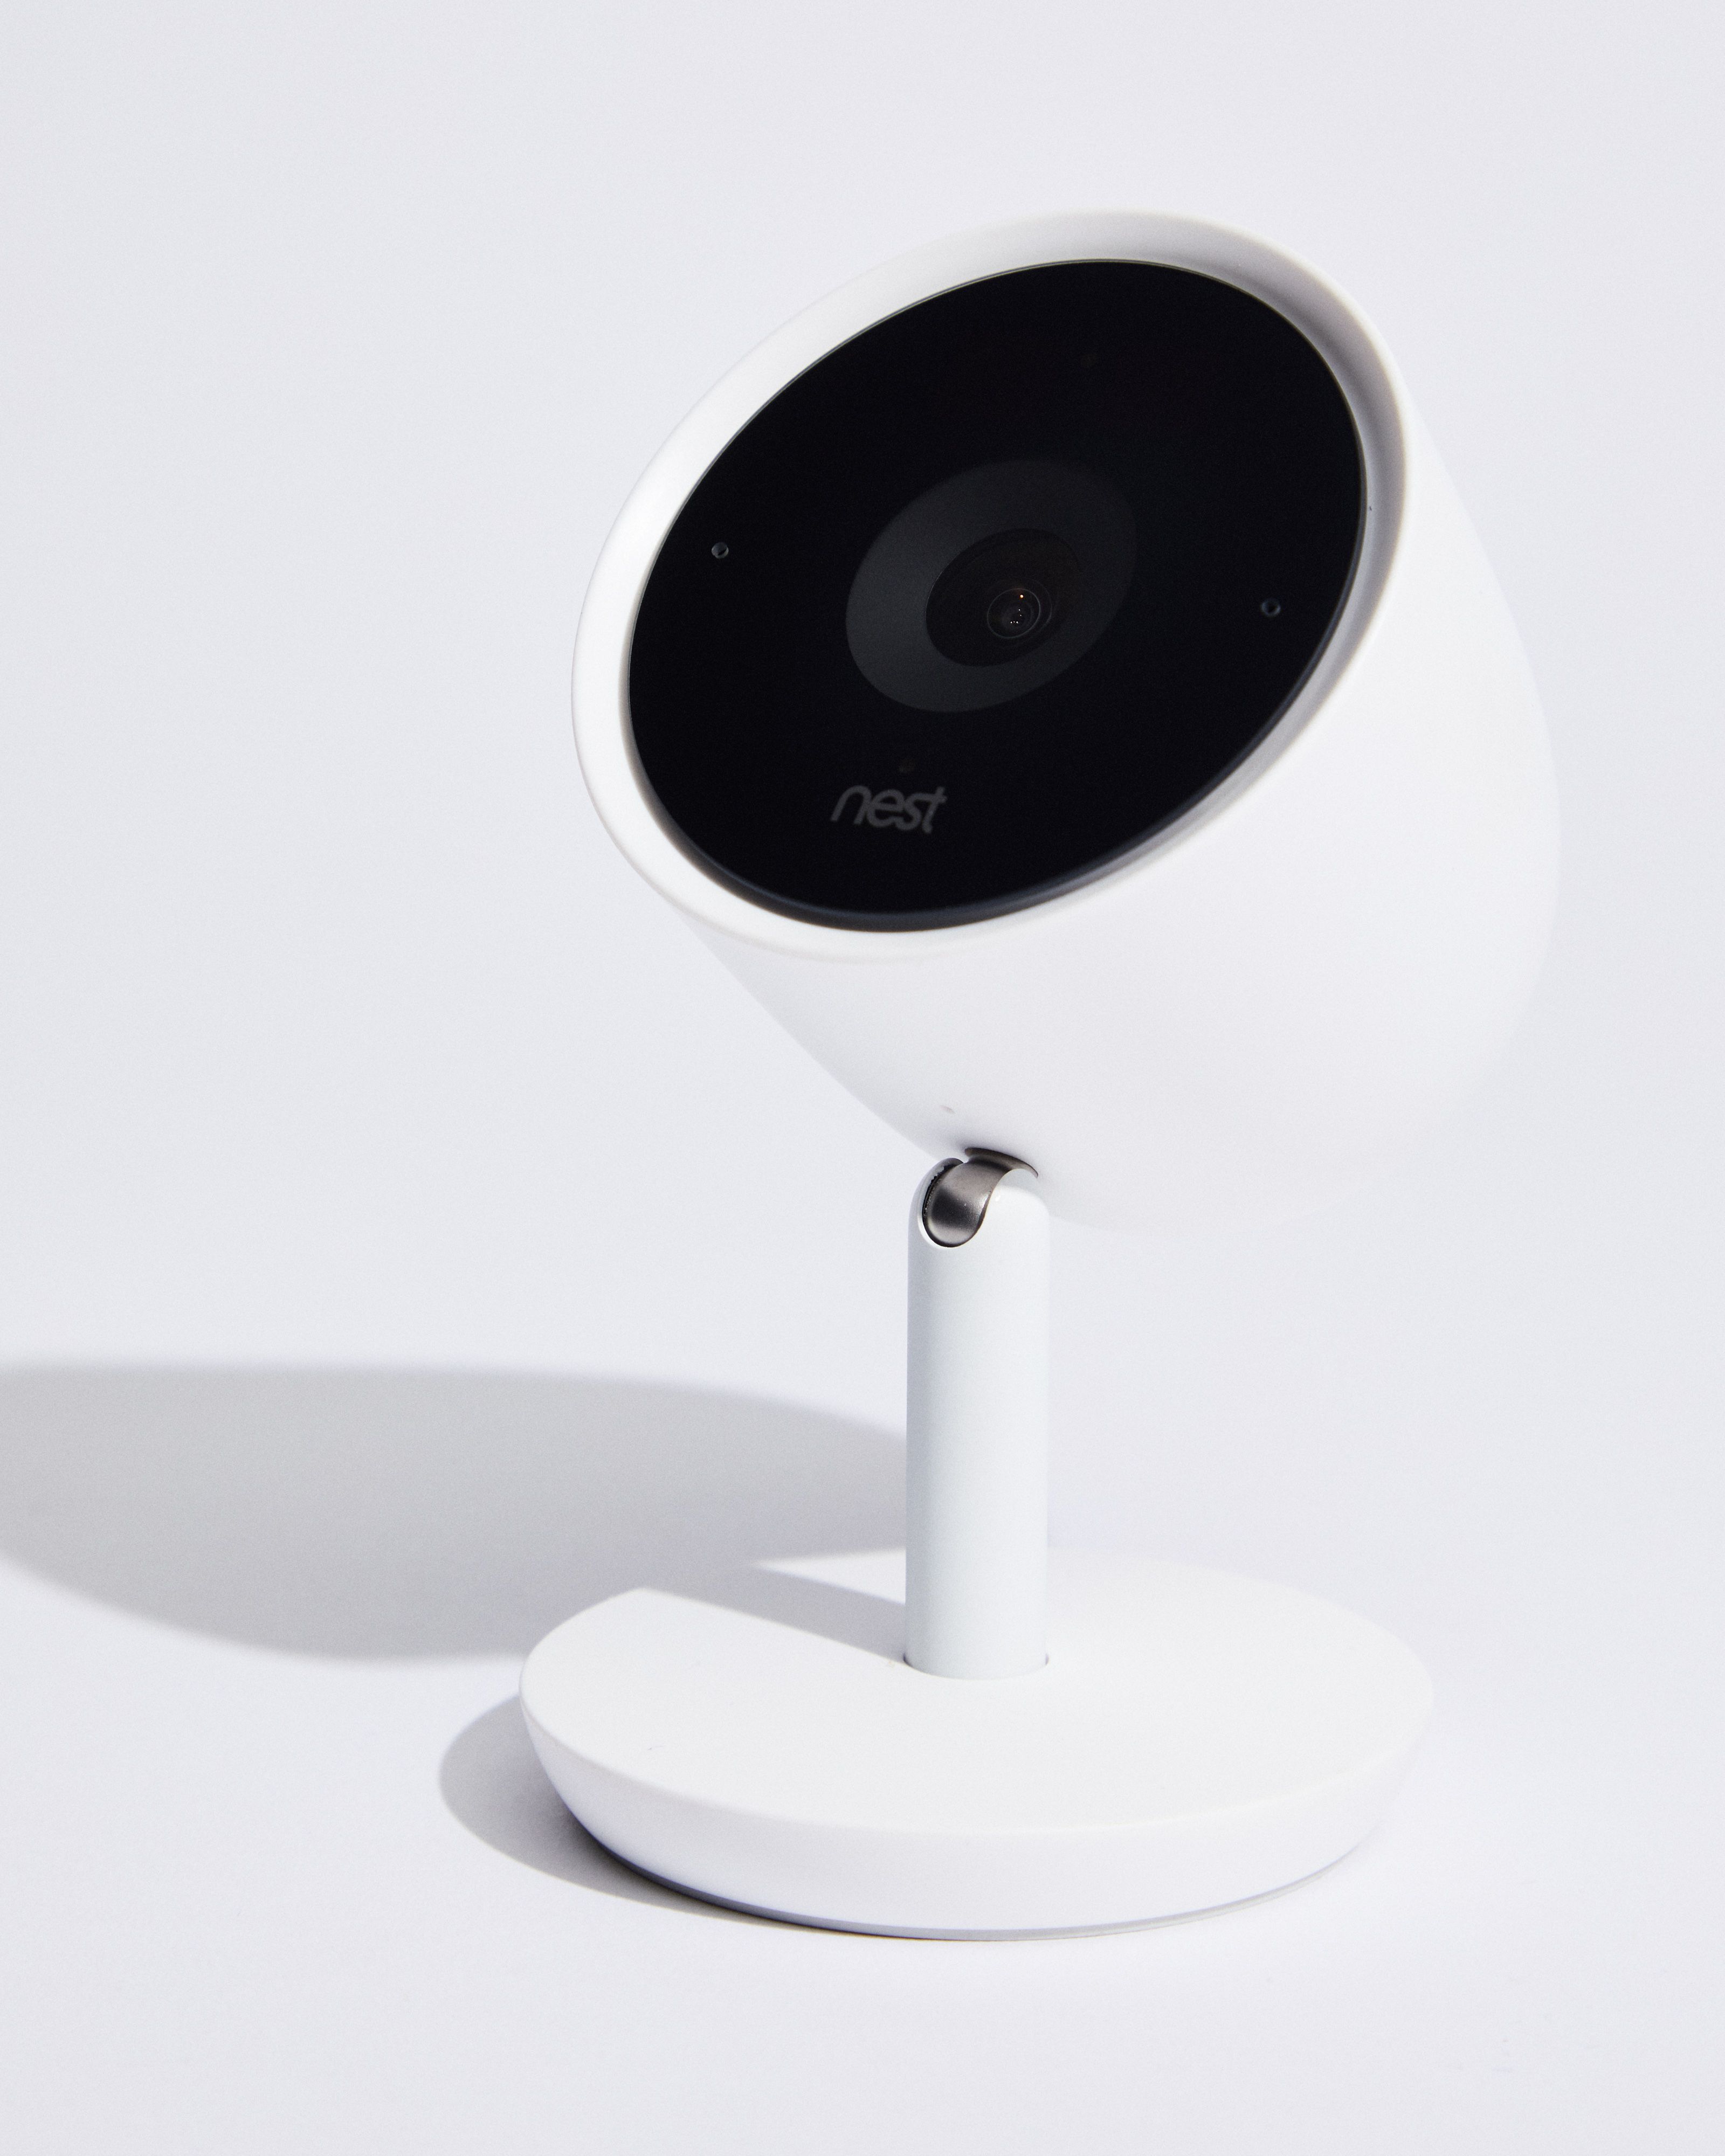 download google nest cameras